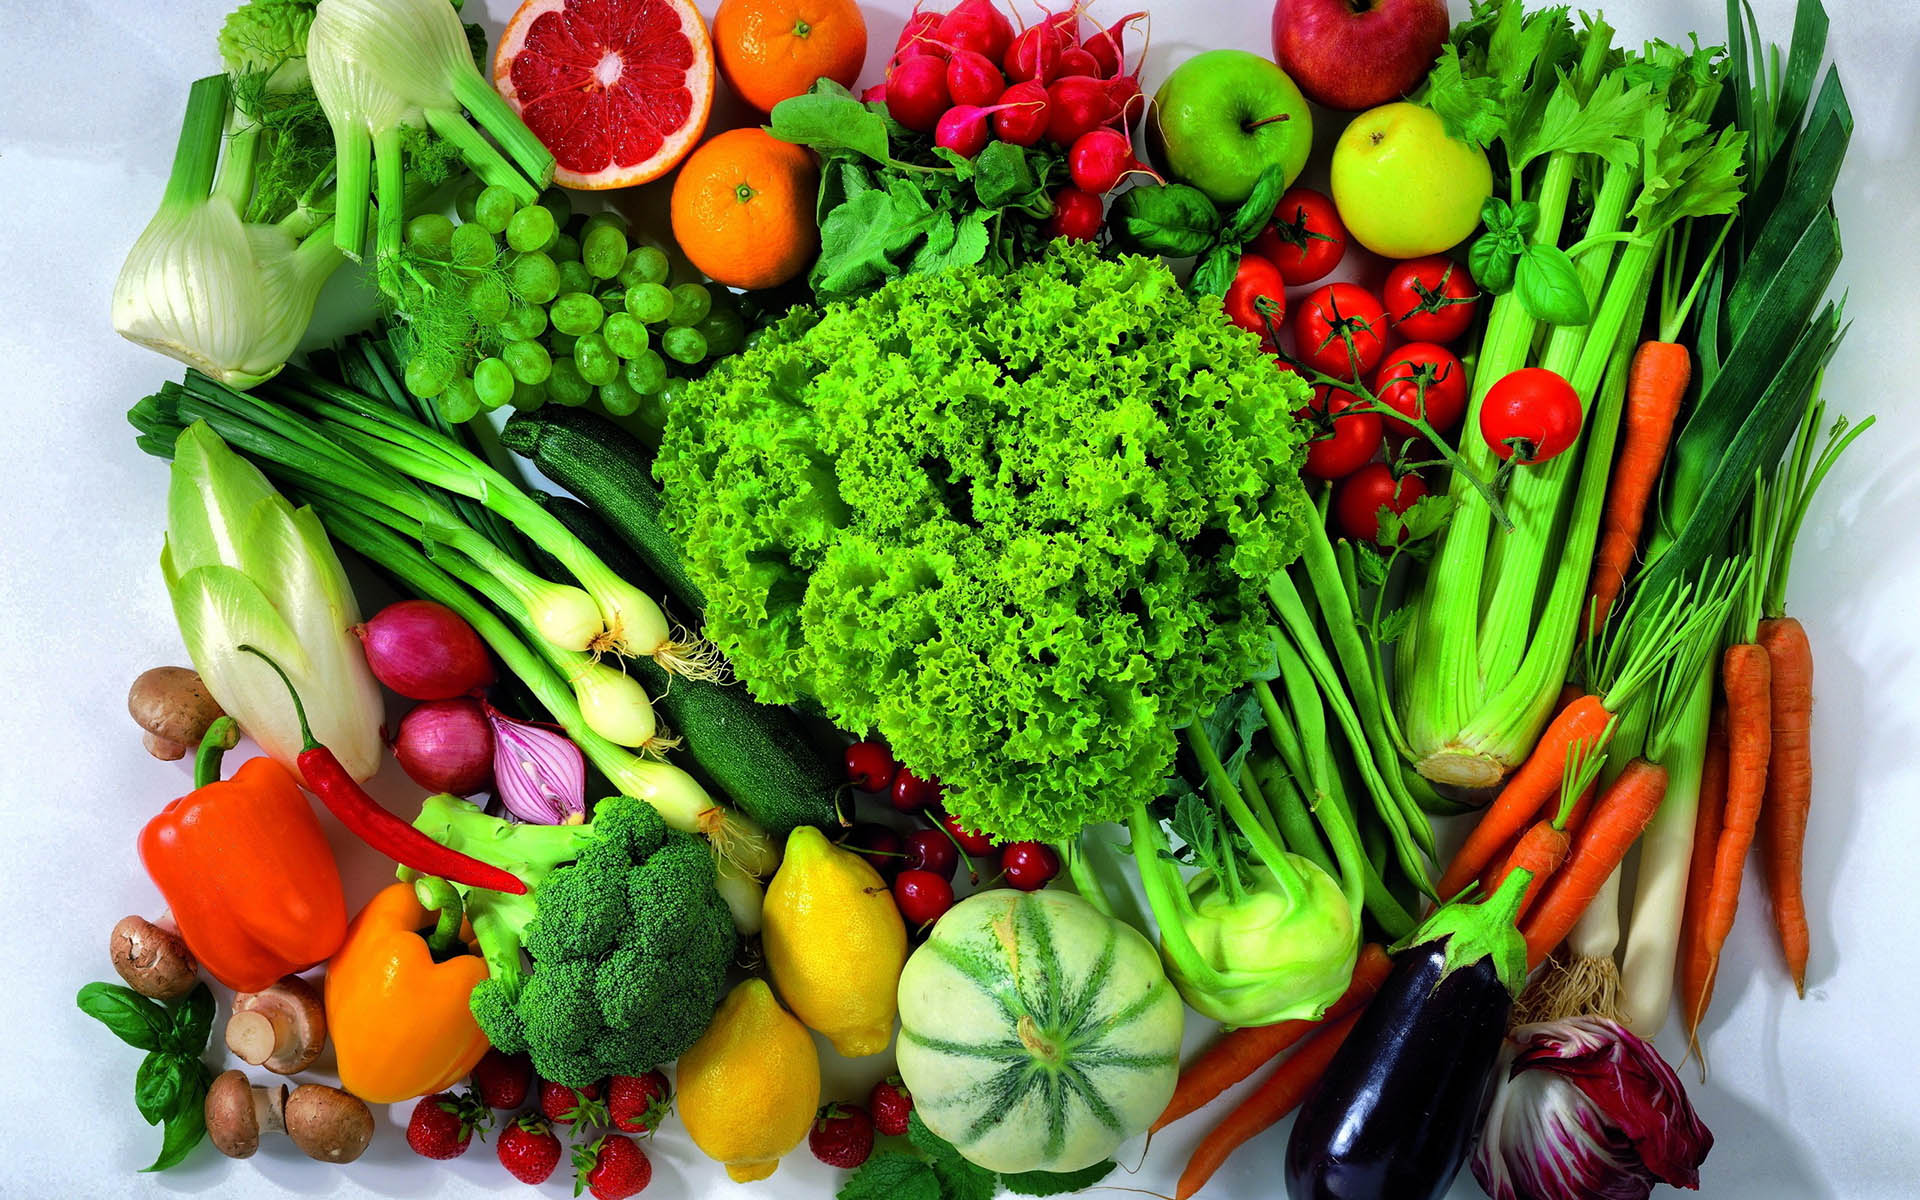 سبزیجاتی که باید از مصرف زیاد آن اجتناب کنیم